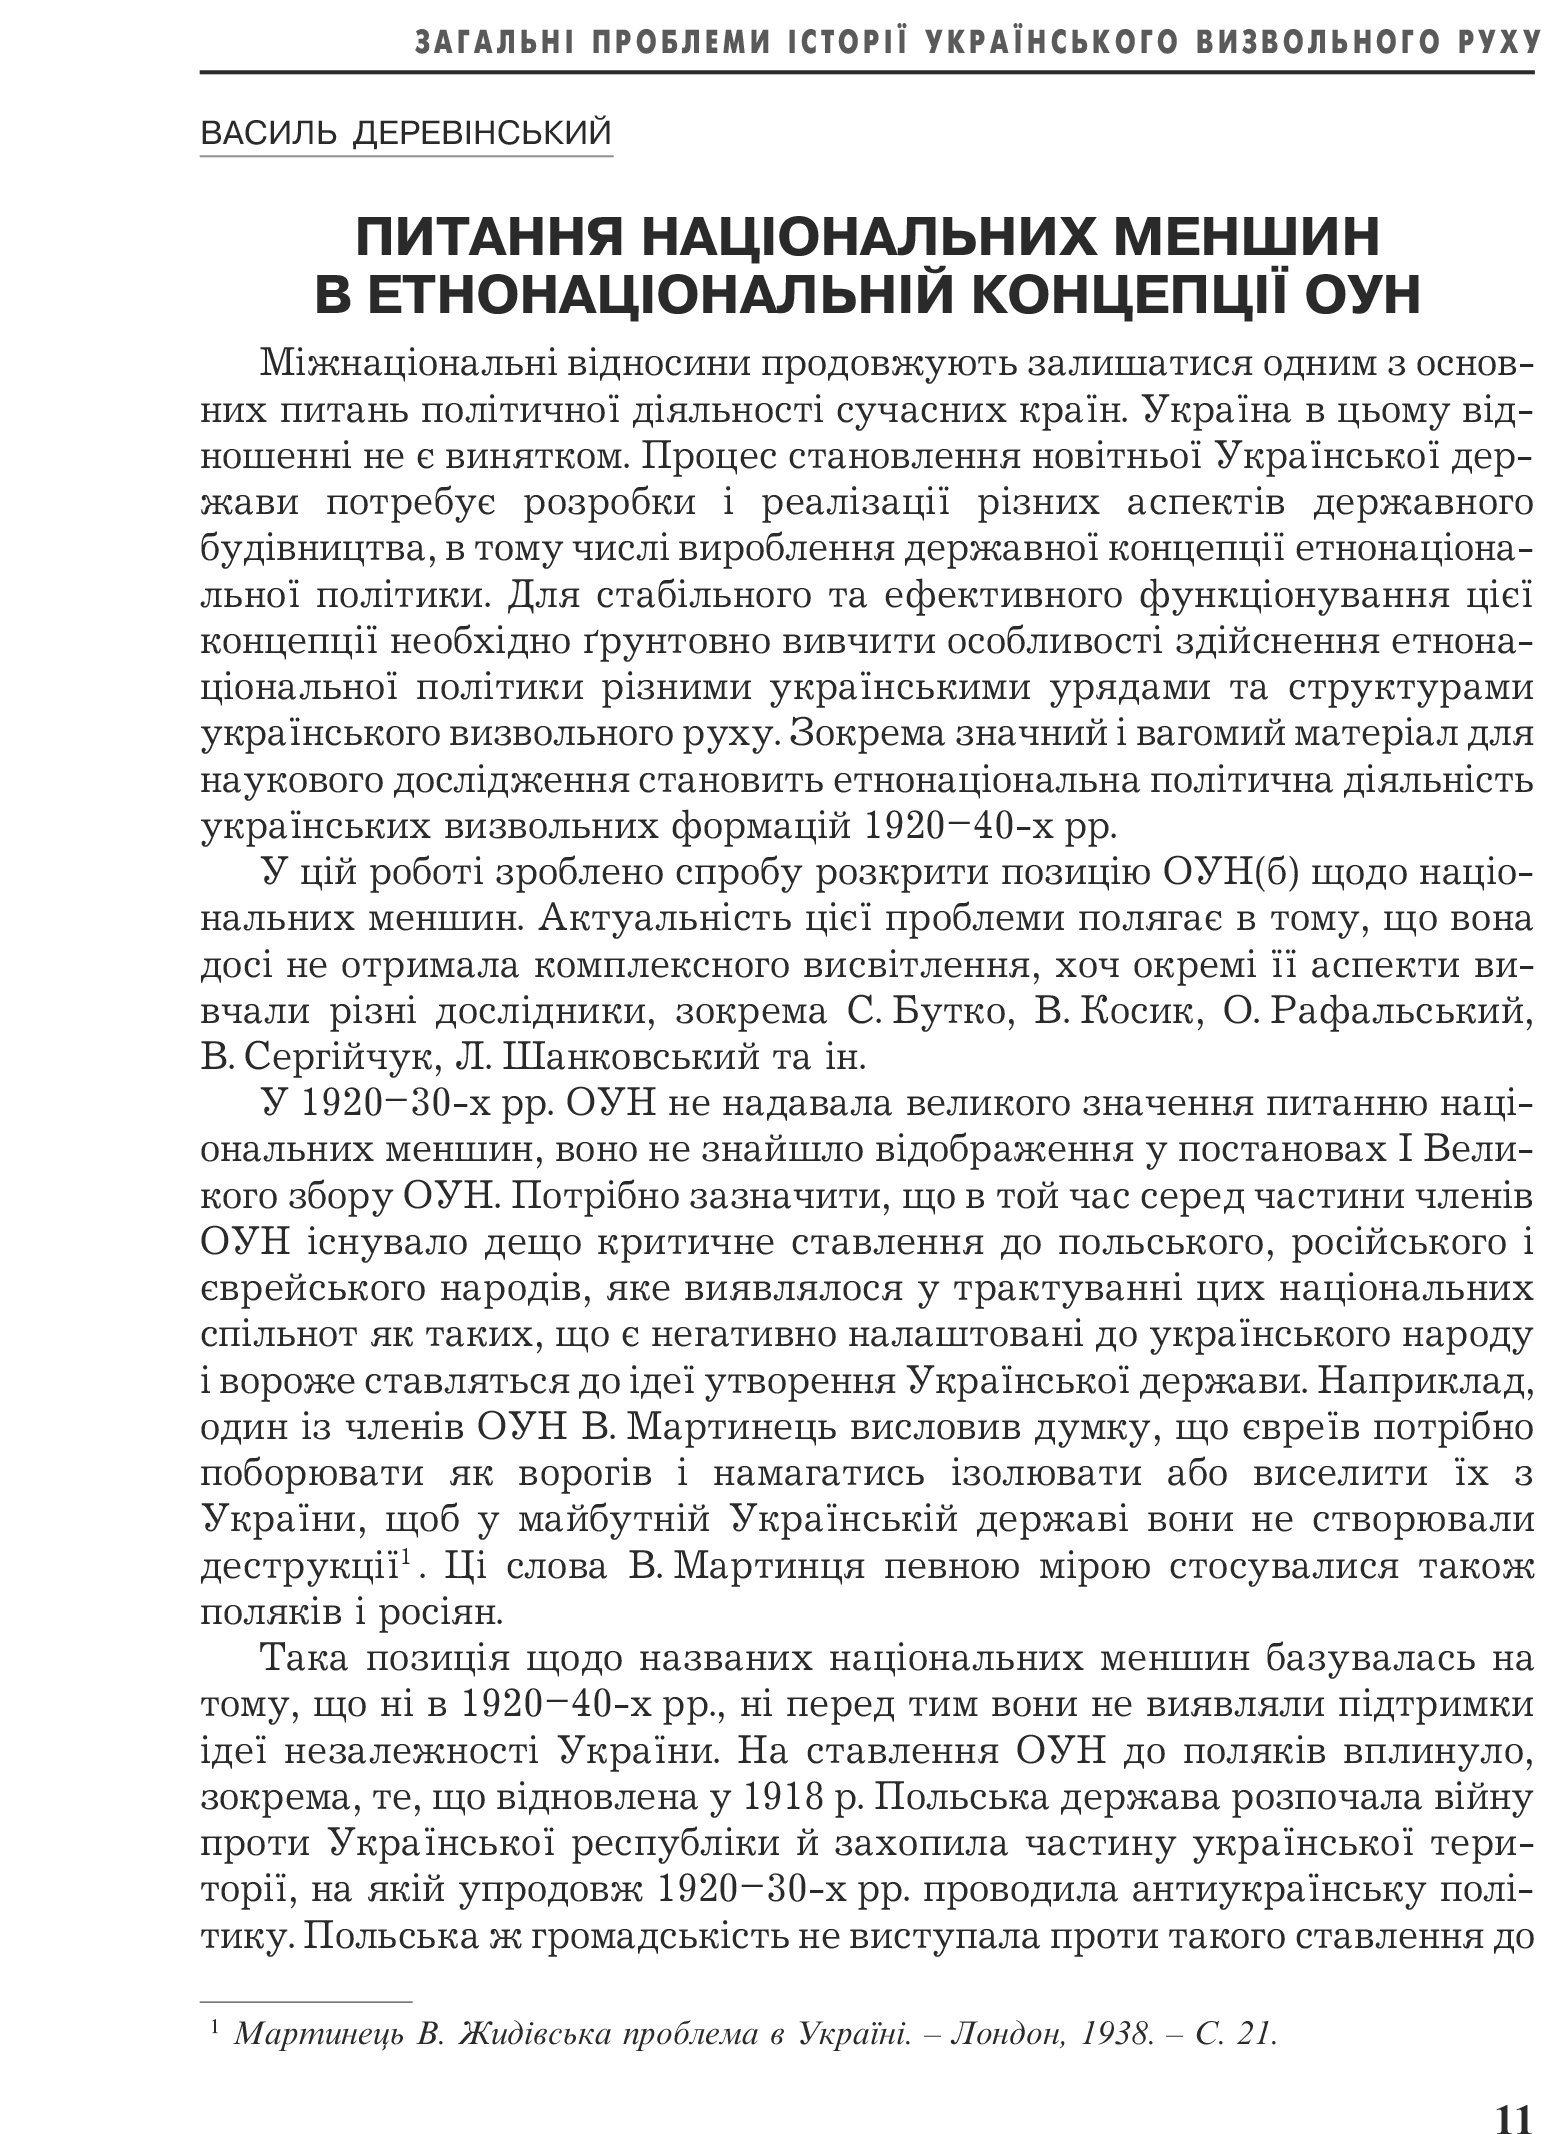 Український визвольний рух №22, ст. 11 - 15